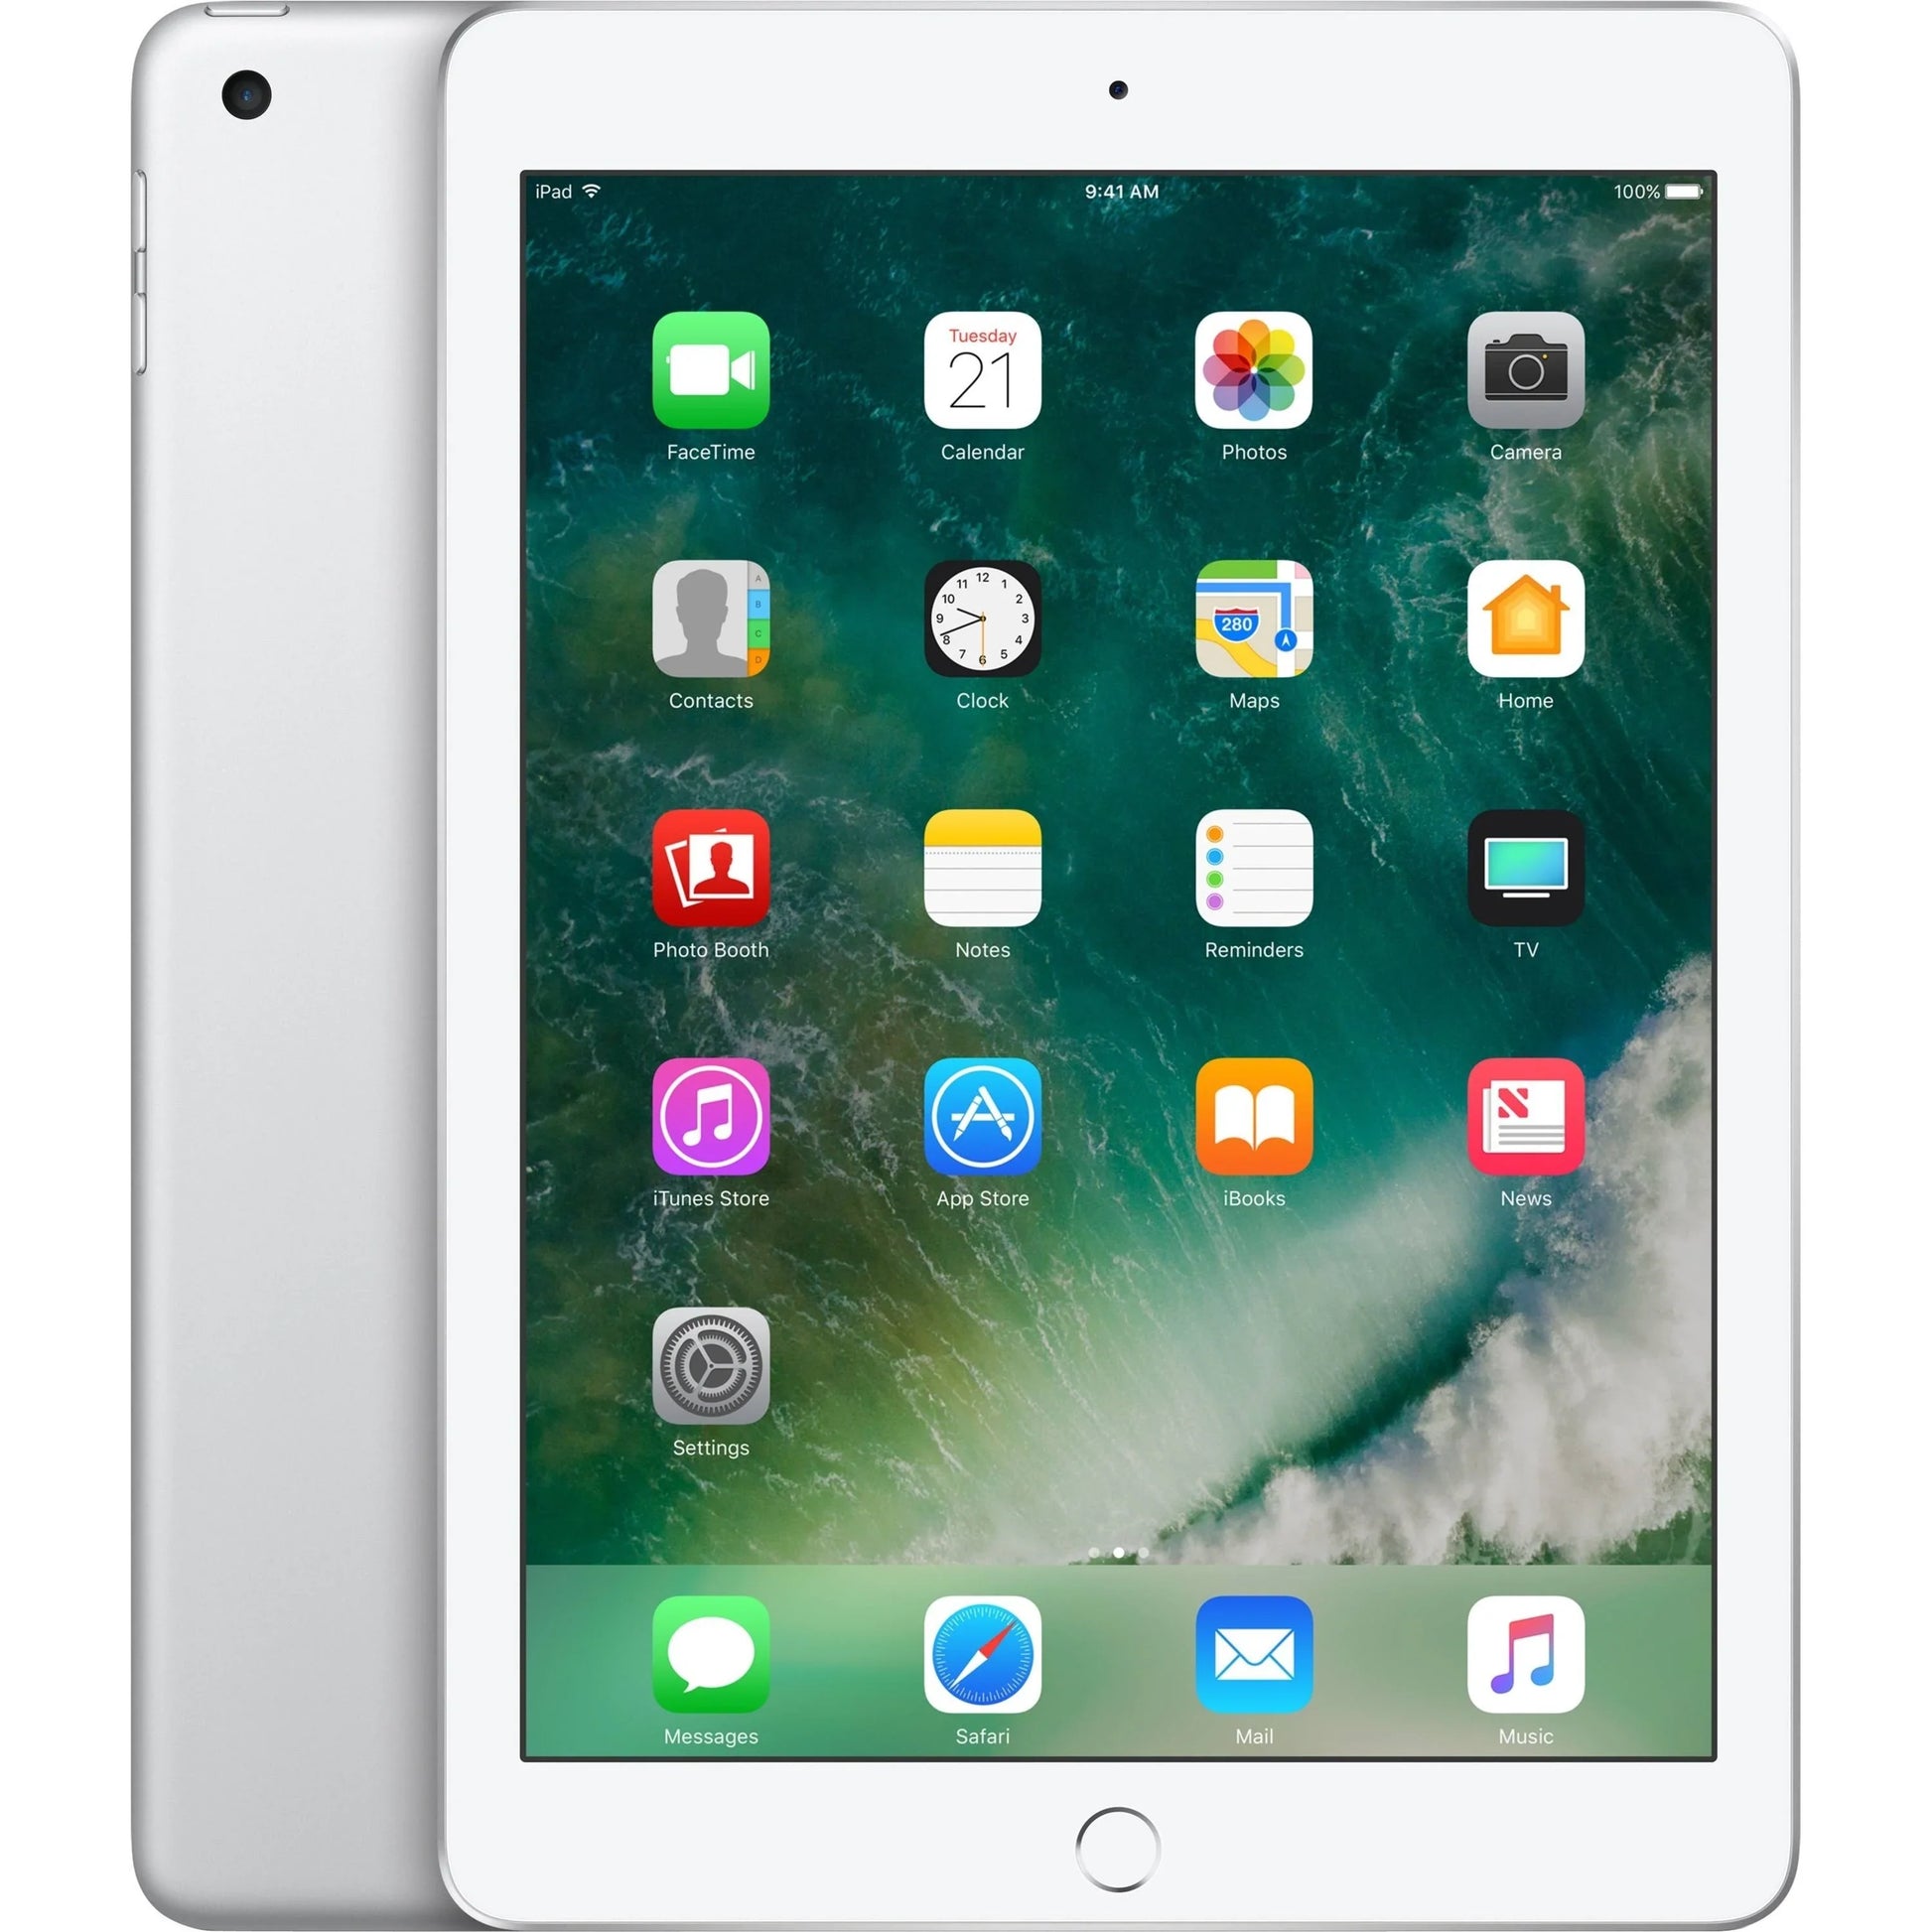 Apple iPad (5th Gen) | 32GB | Wi-Fi ProTech I.T. Solutions